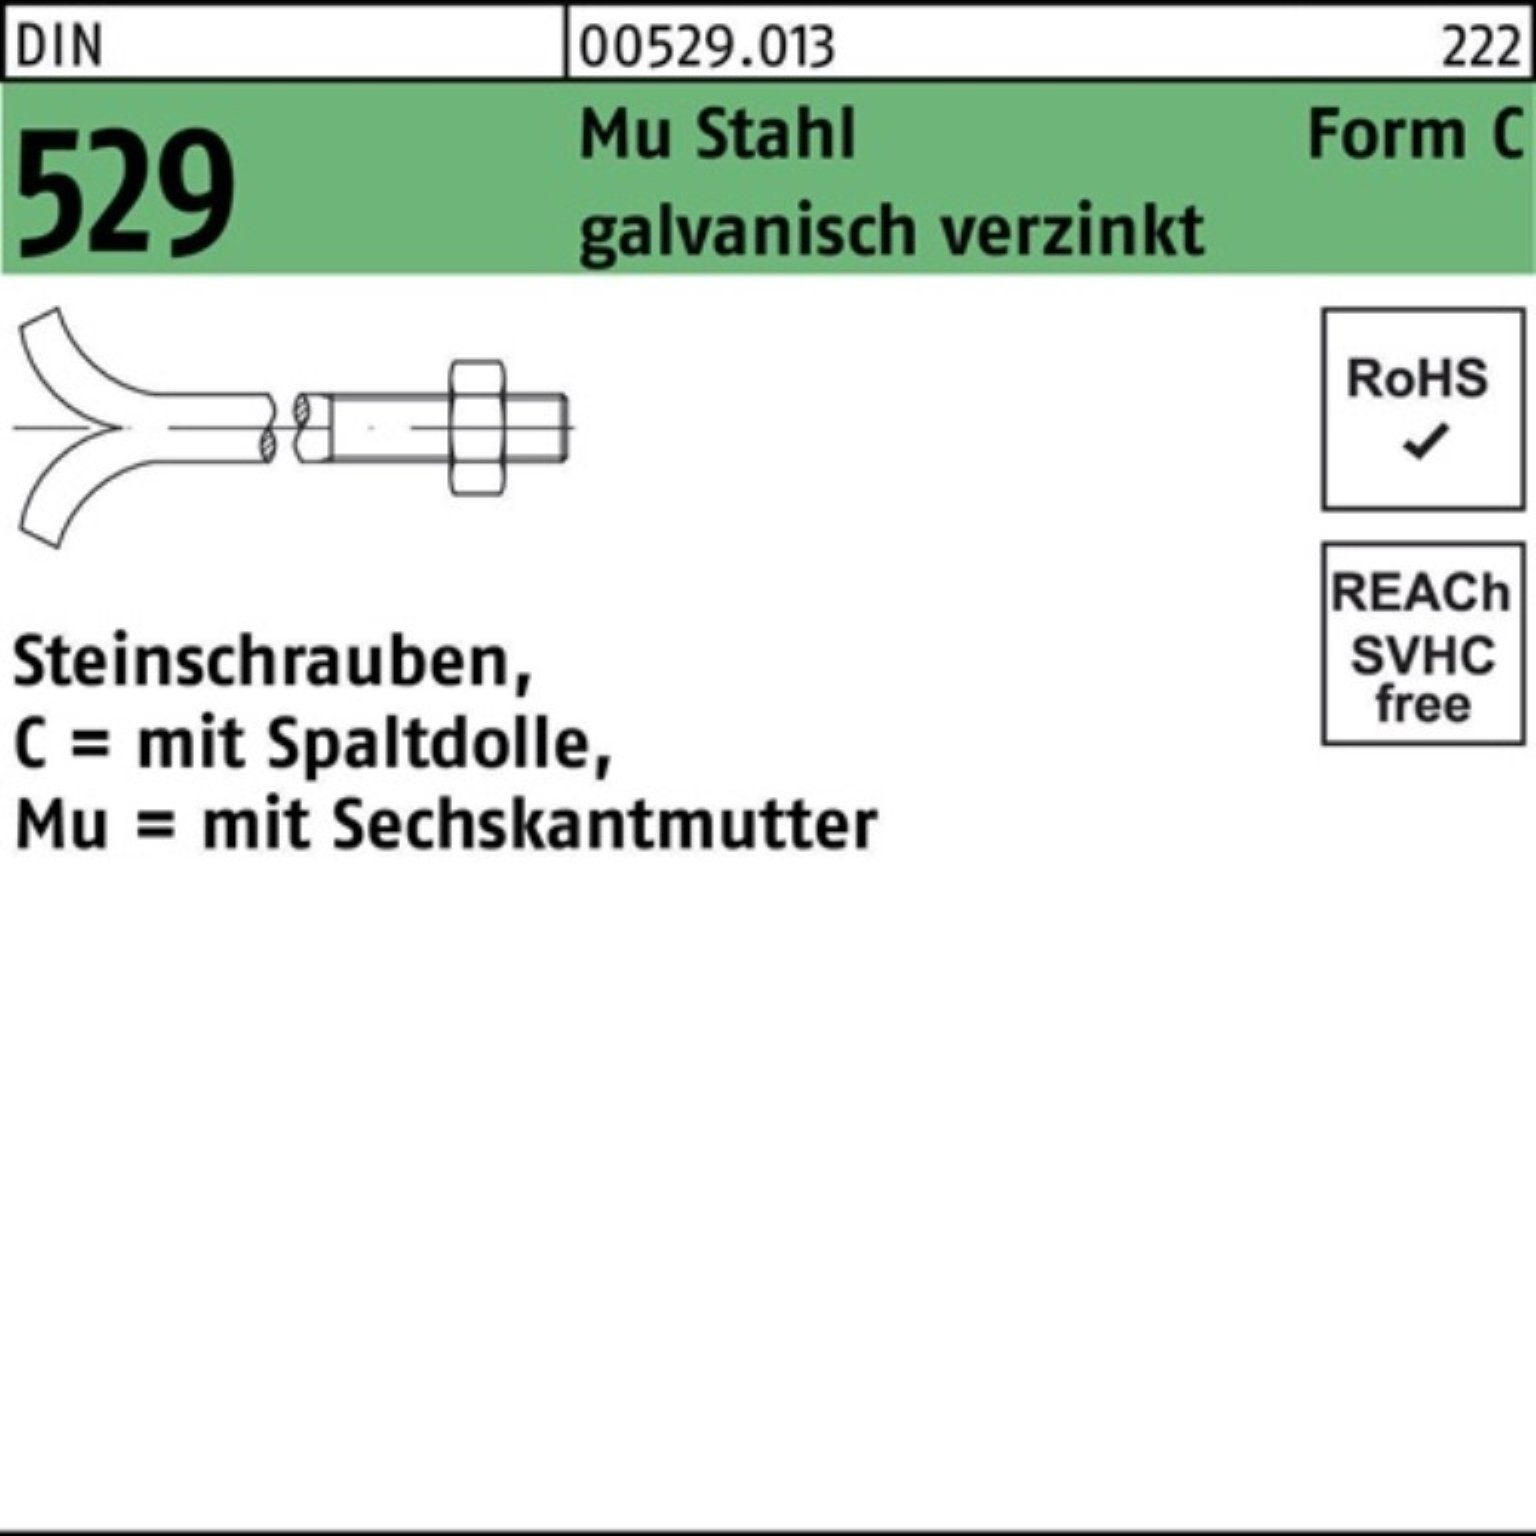 16x120 Reyher Steinschraube CM 529 Schraube 100er Mu Spaltdolle/6-ktmutter Pack 3. DIN